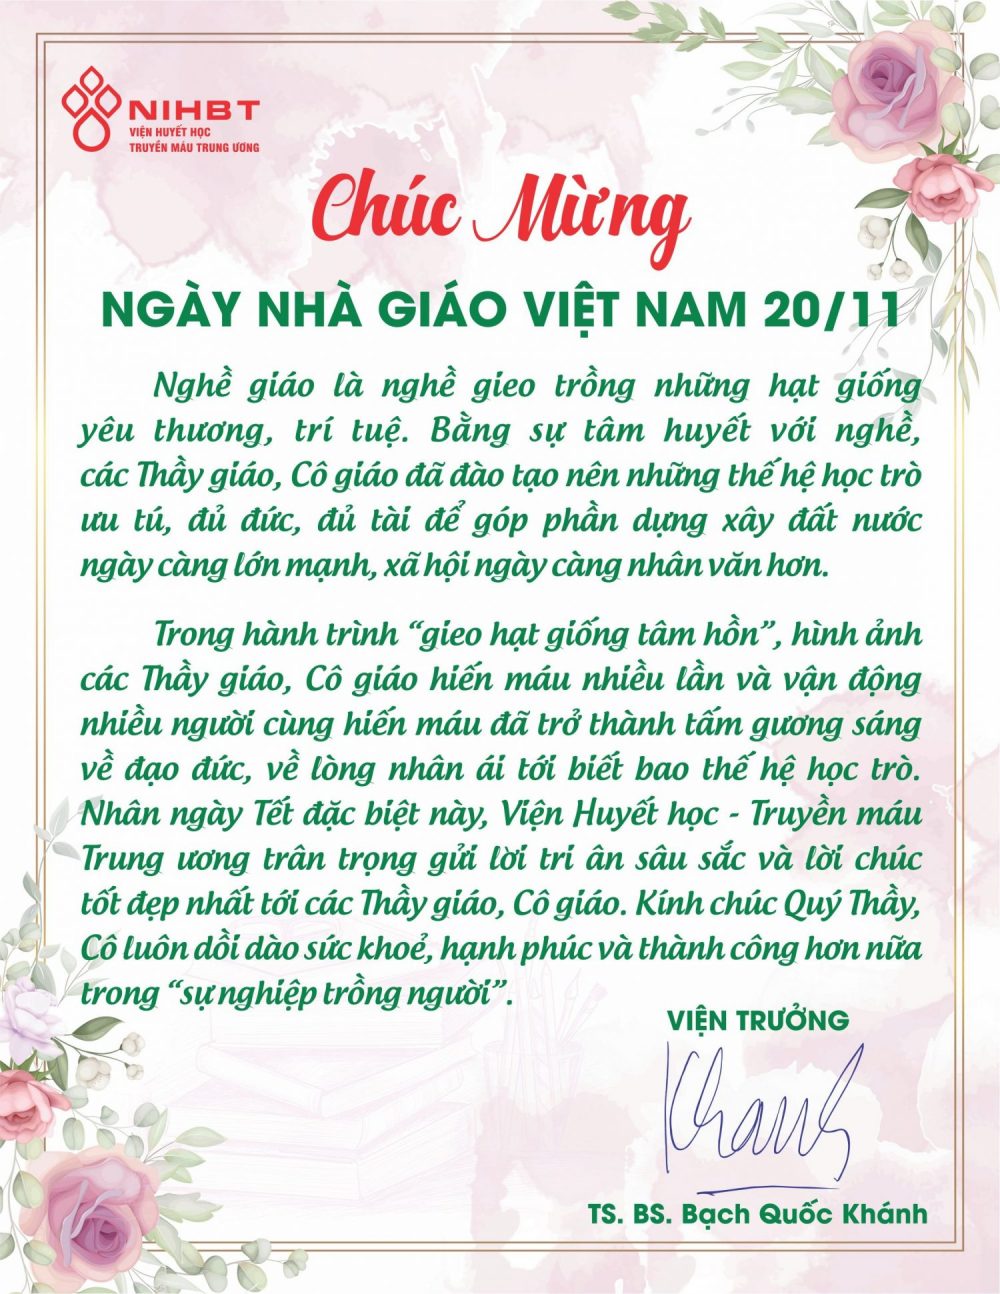 Chúc mừng ngày Nhà giáo Việt Nam 20/11 - Viện Huyết học - Truyền máu Trung  ươngViện Huyết học – Truyền máu Trung ương